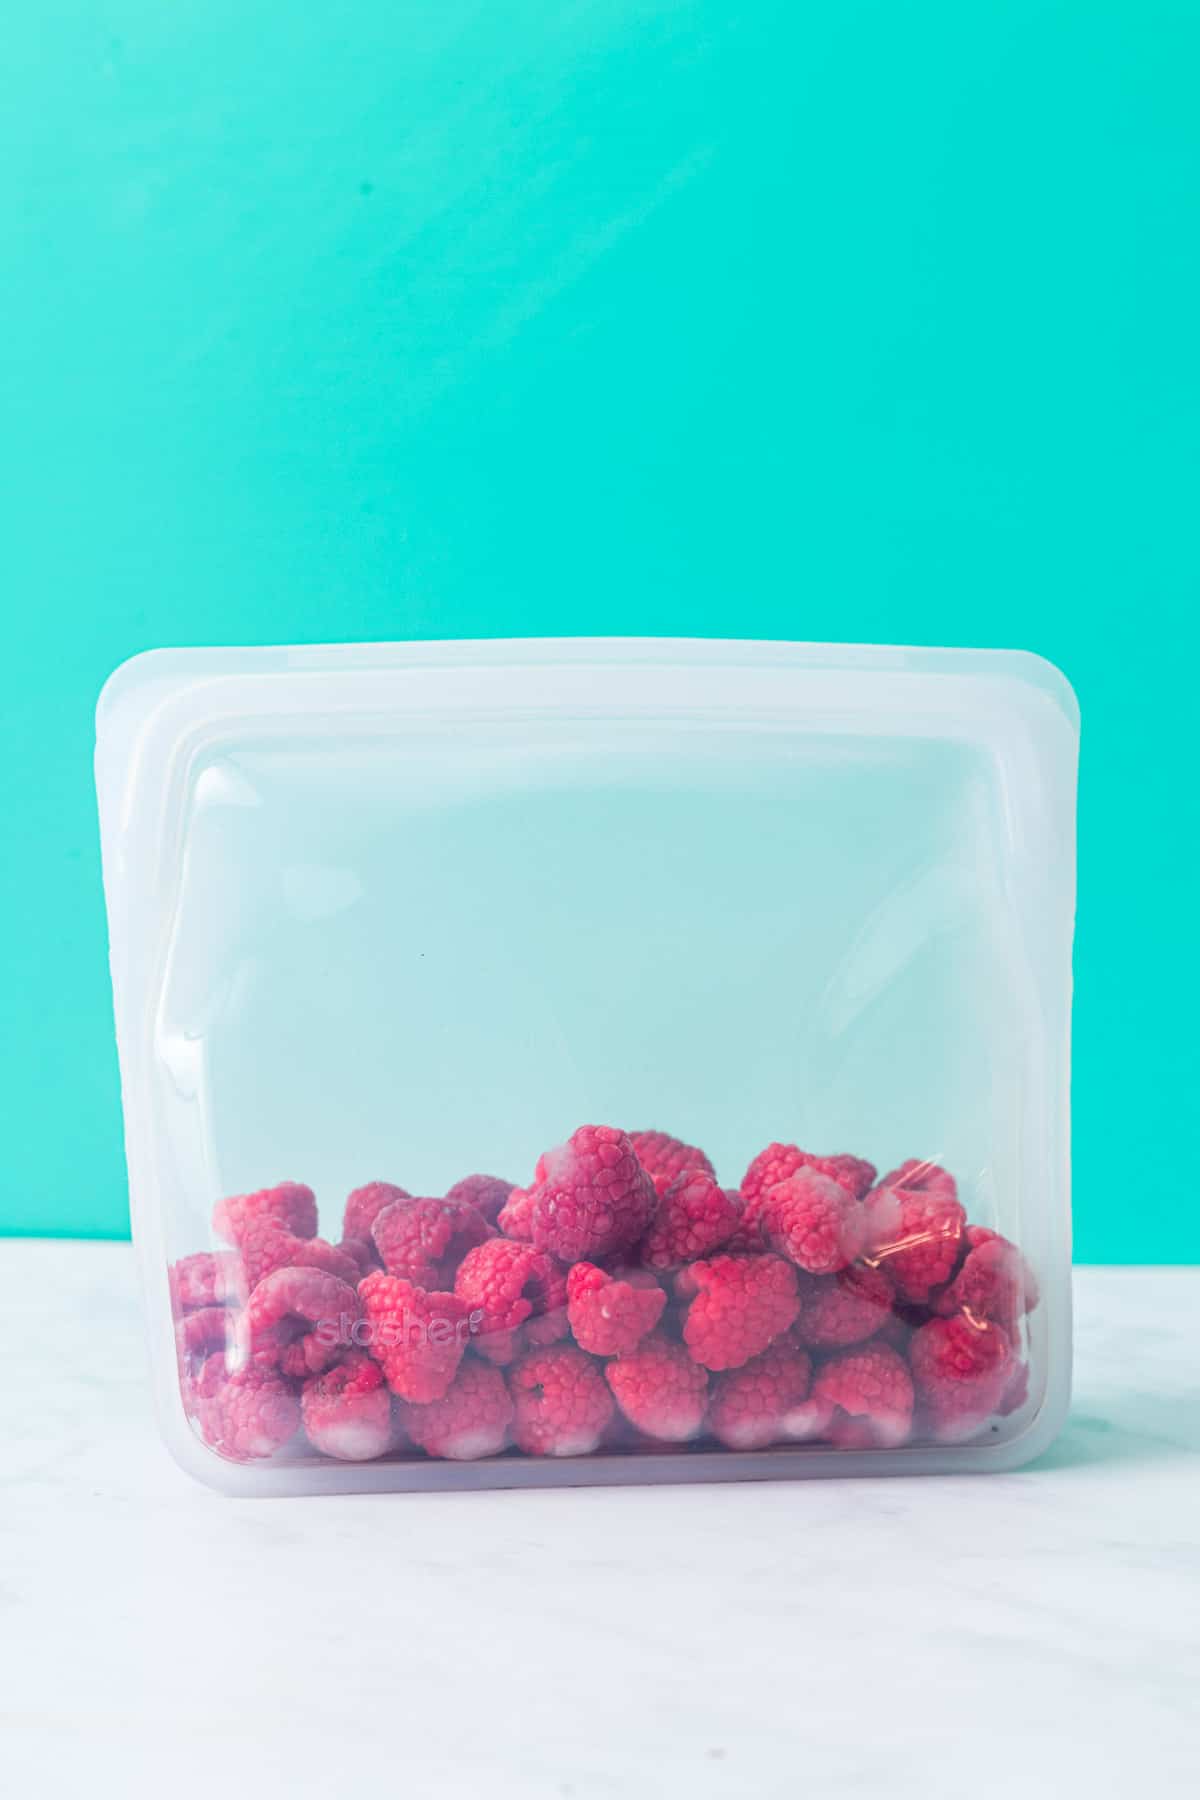 Open bag of frozen raspberries.